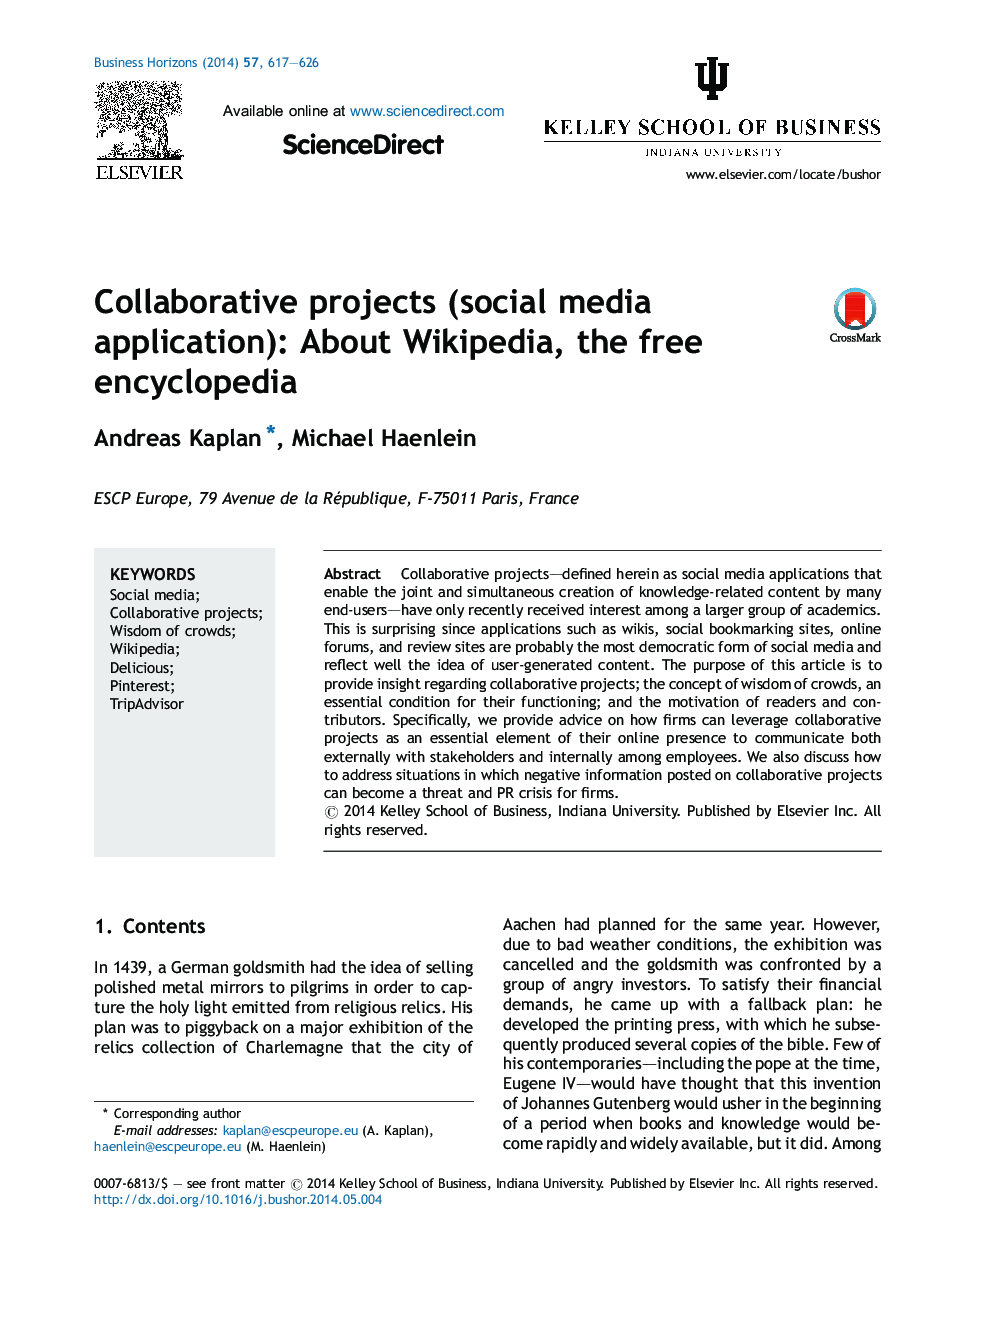 پروژه های همکاری (برنامه های کاربردی رسانه های اجتماعی): درباره ویکی پدیا، دانشنامه آزاد 